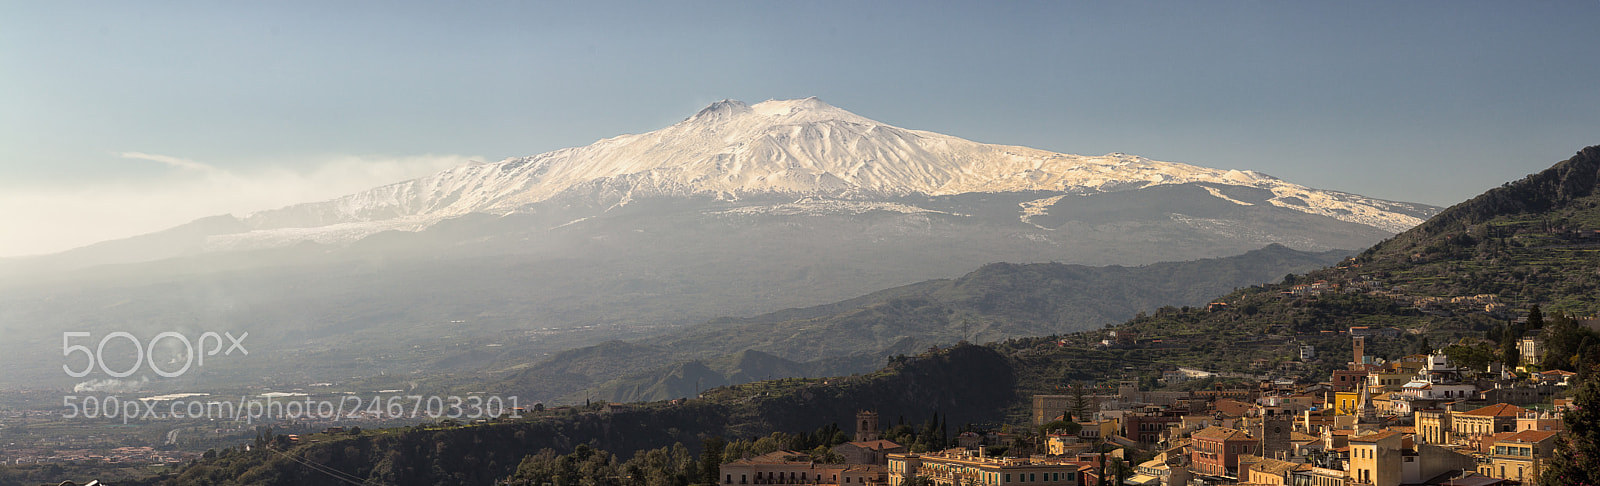 Canon EOS 60D sample photo. Etna panorama photography